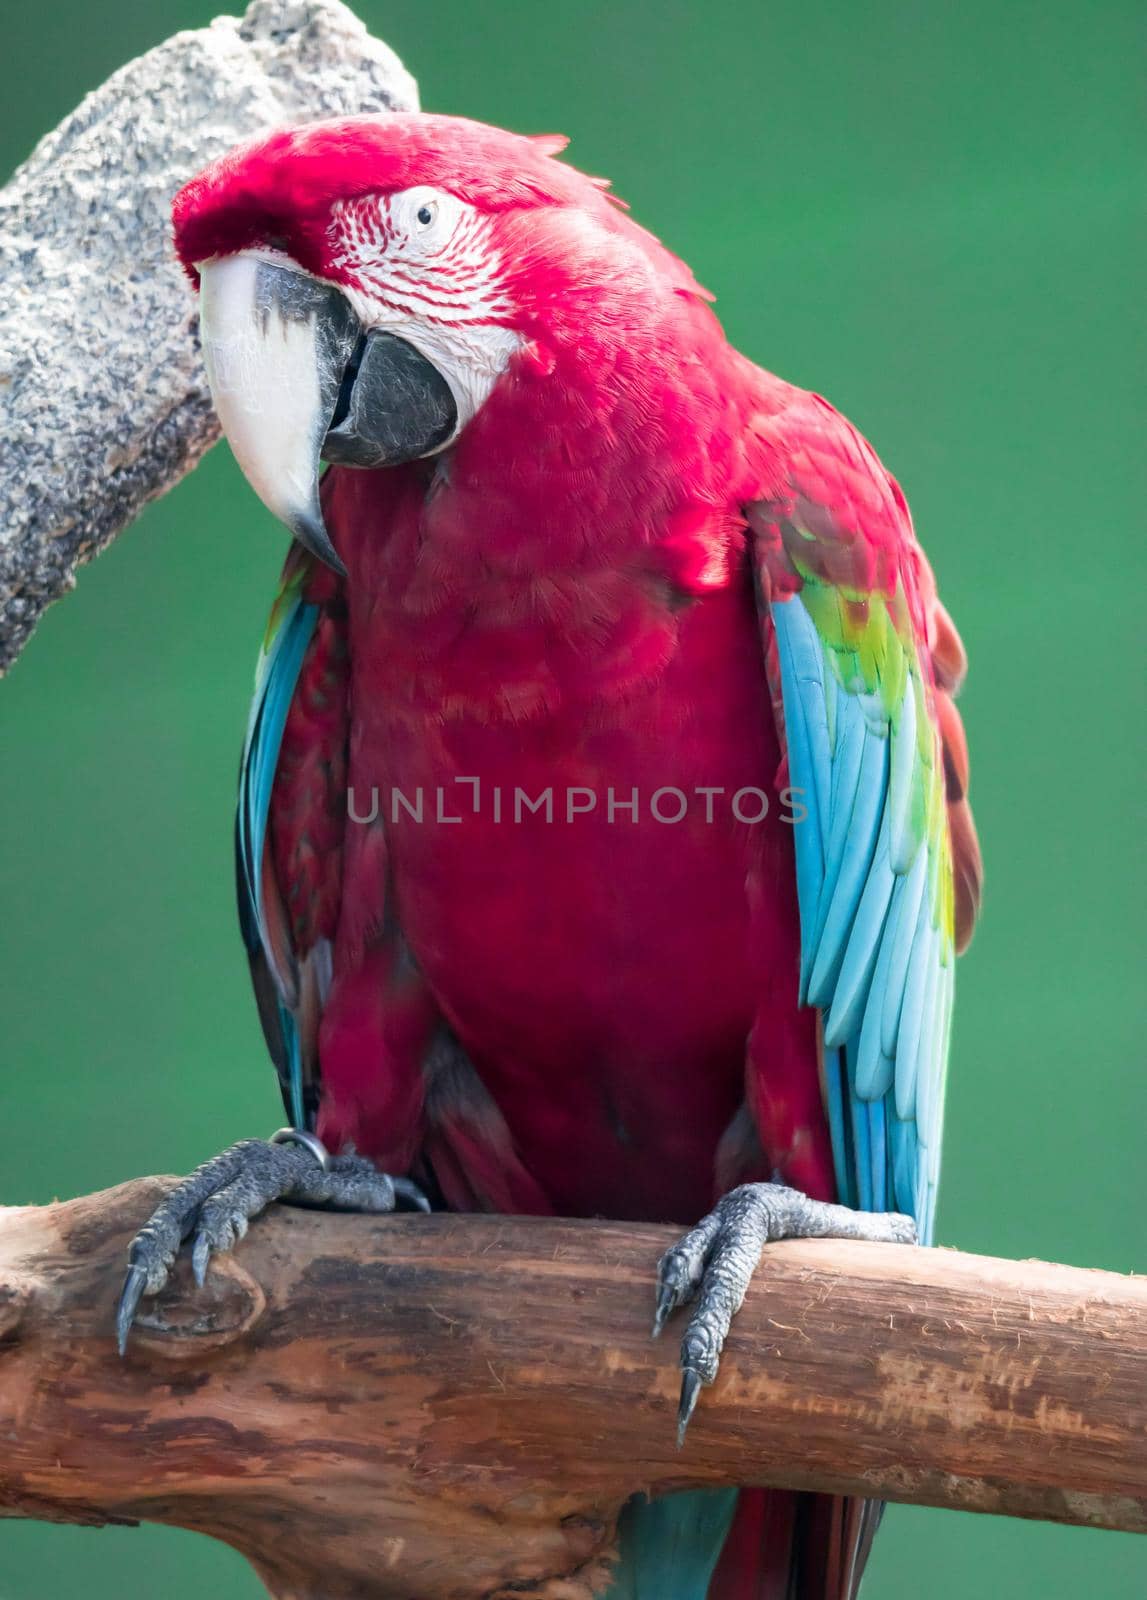 A Scarlett Macaw bird parrot looking curious